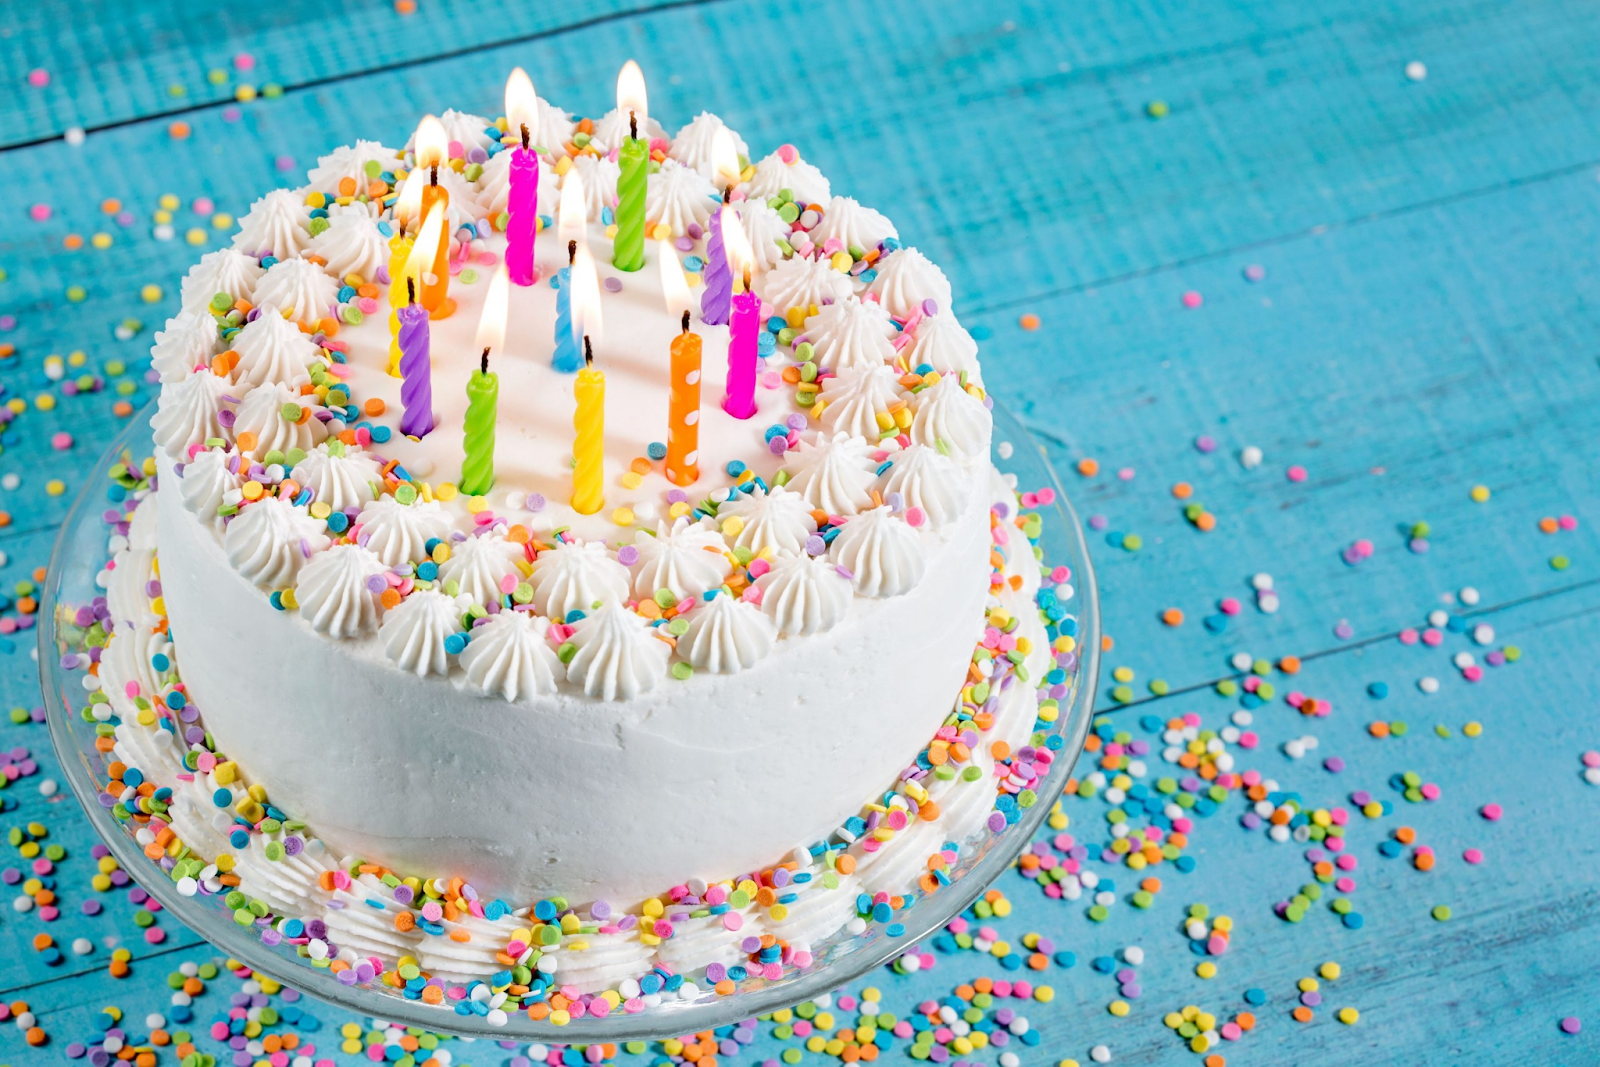 Fotos de bolo de aniversário feminino